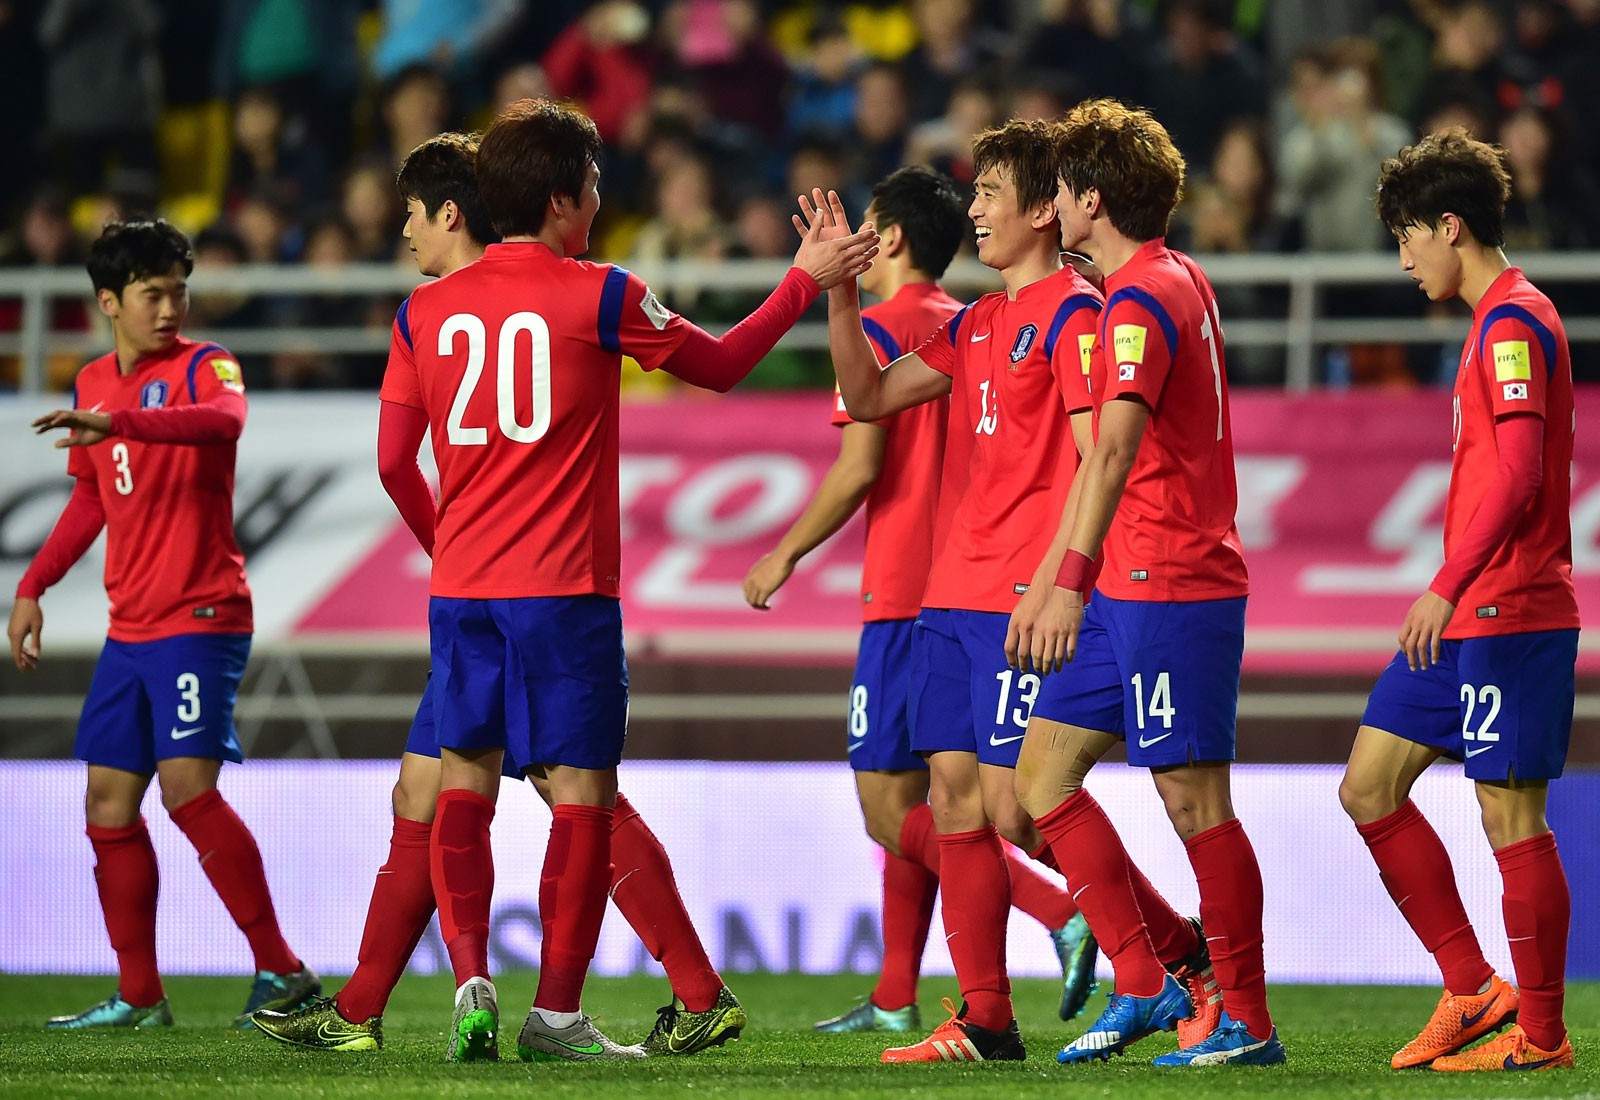 ĐT Hàn Quốc được xếp vào nhóm các đội bóng có nguy cơ bị loại sớm ở World Cup 2018